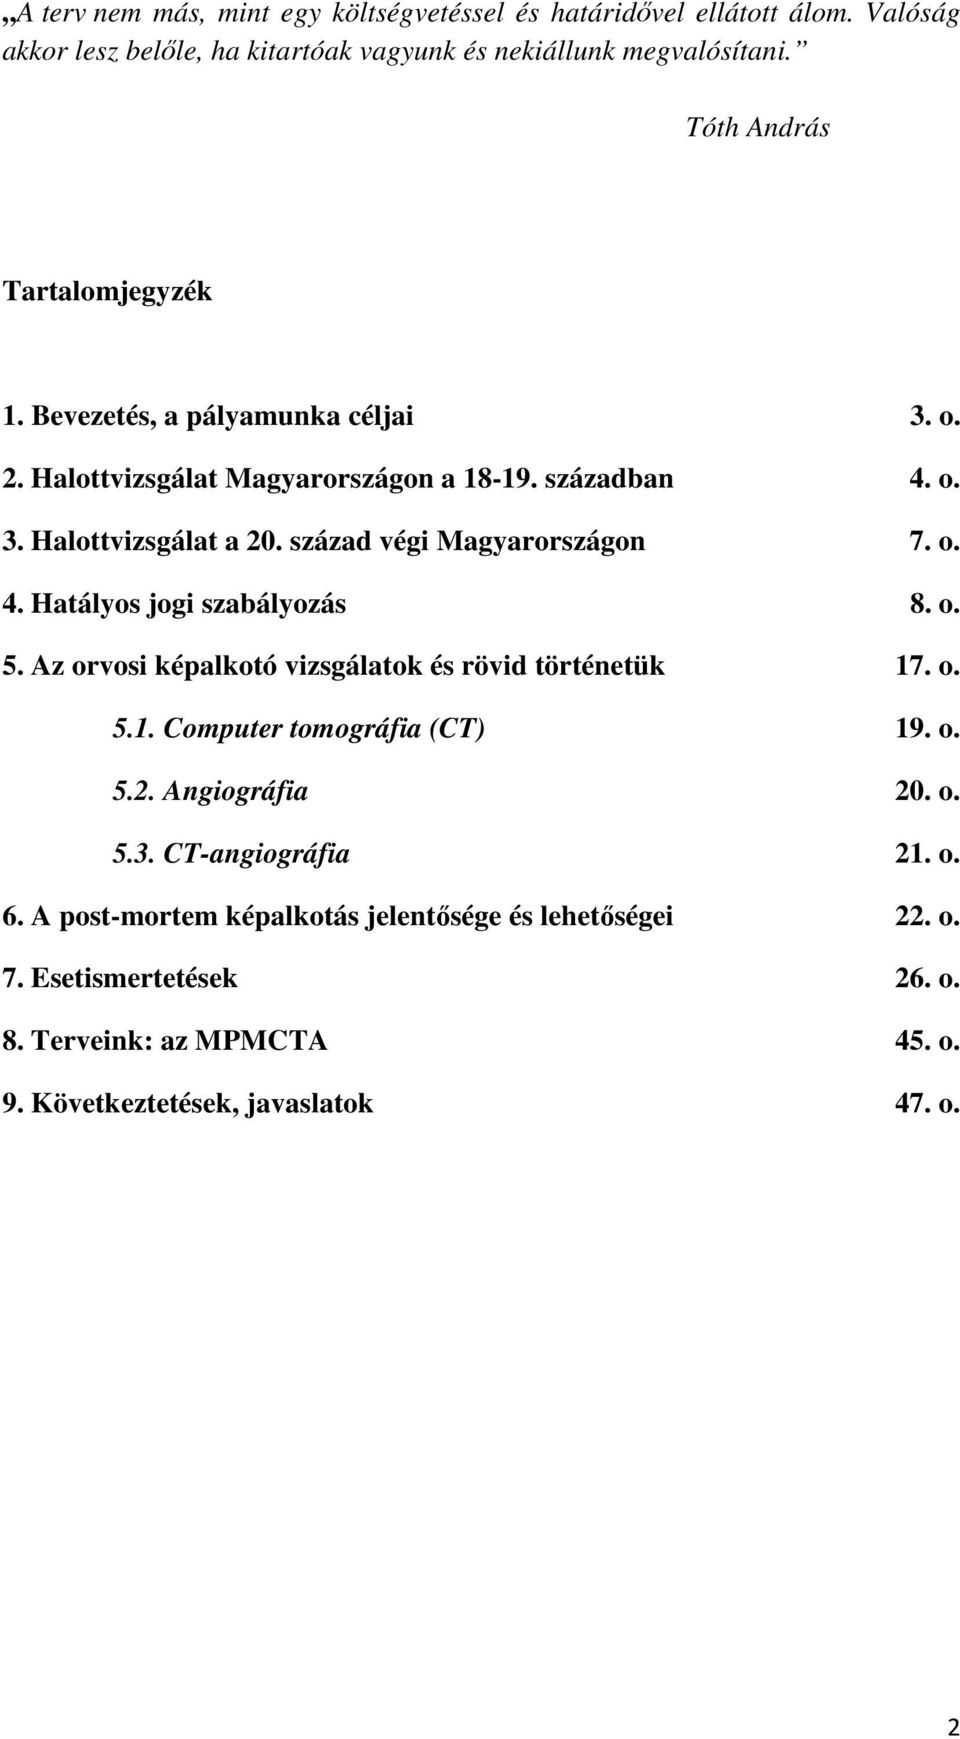 század végi Magyarországon 7. o. 4. Hatályos jogi szabályozás 8. o. 5. Az orvosi képalkotó vizsgálatok és rövid történetük 17. o. 5.1. Computer tomográfia (CT) 19. o. 5.2.